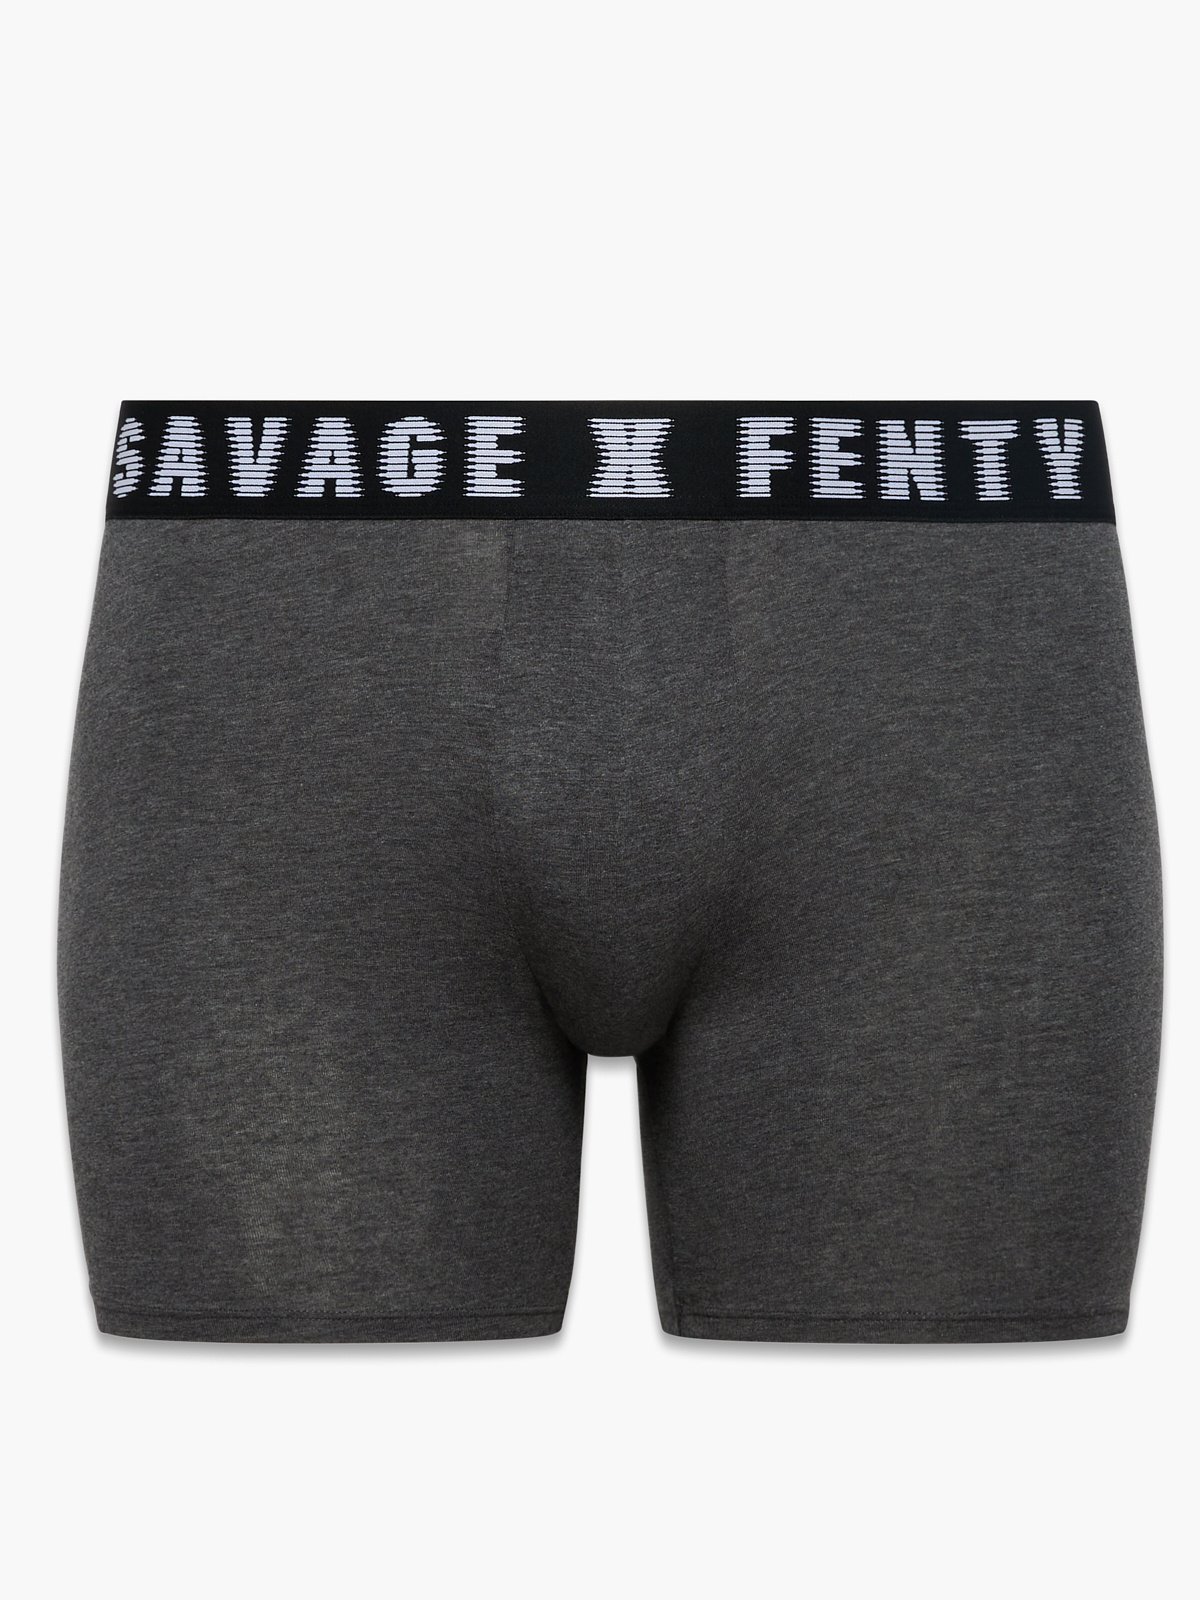 Savage X Boxer Briefs in Grey | SAVAGE X FENTY